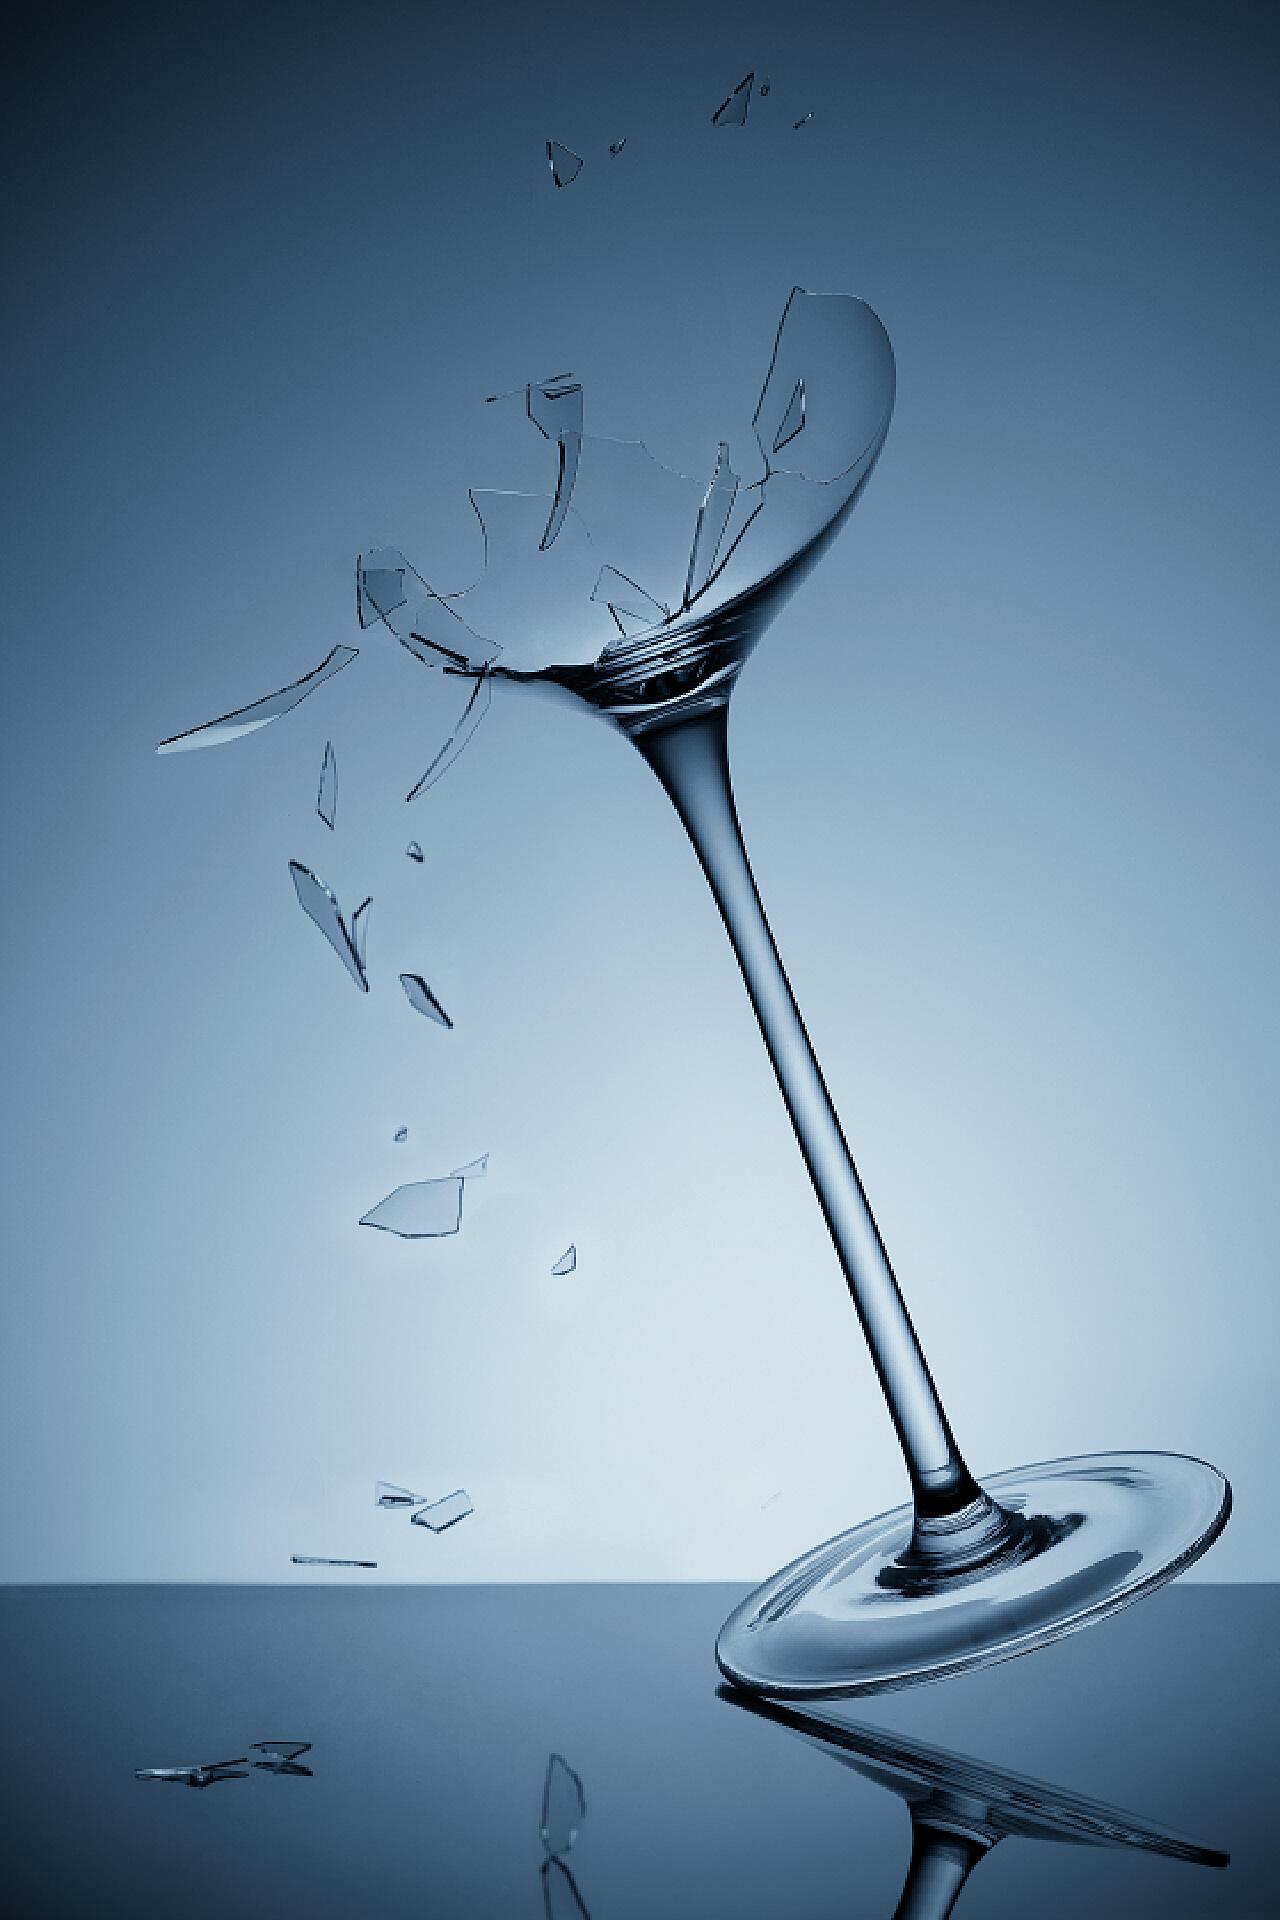 Free Images : sharp, vase, broken, drink, cut, glass bottle, crystal ...